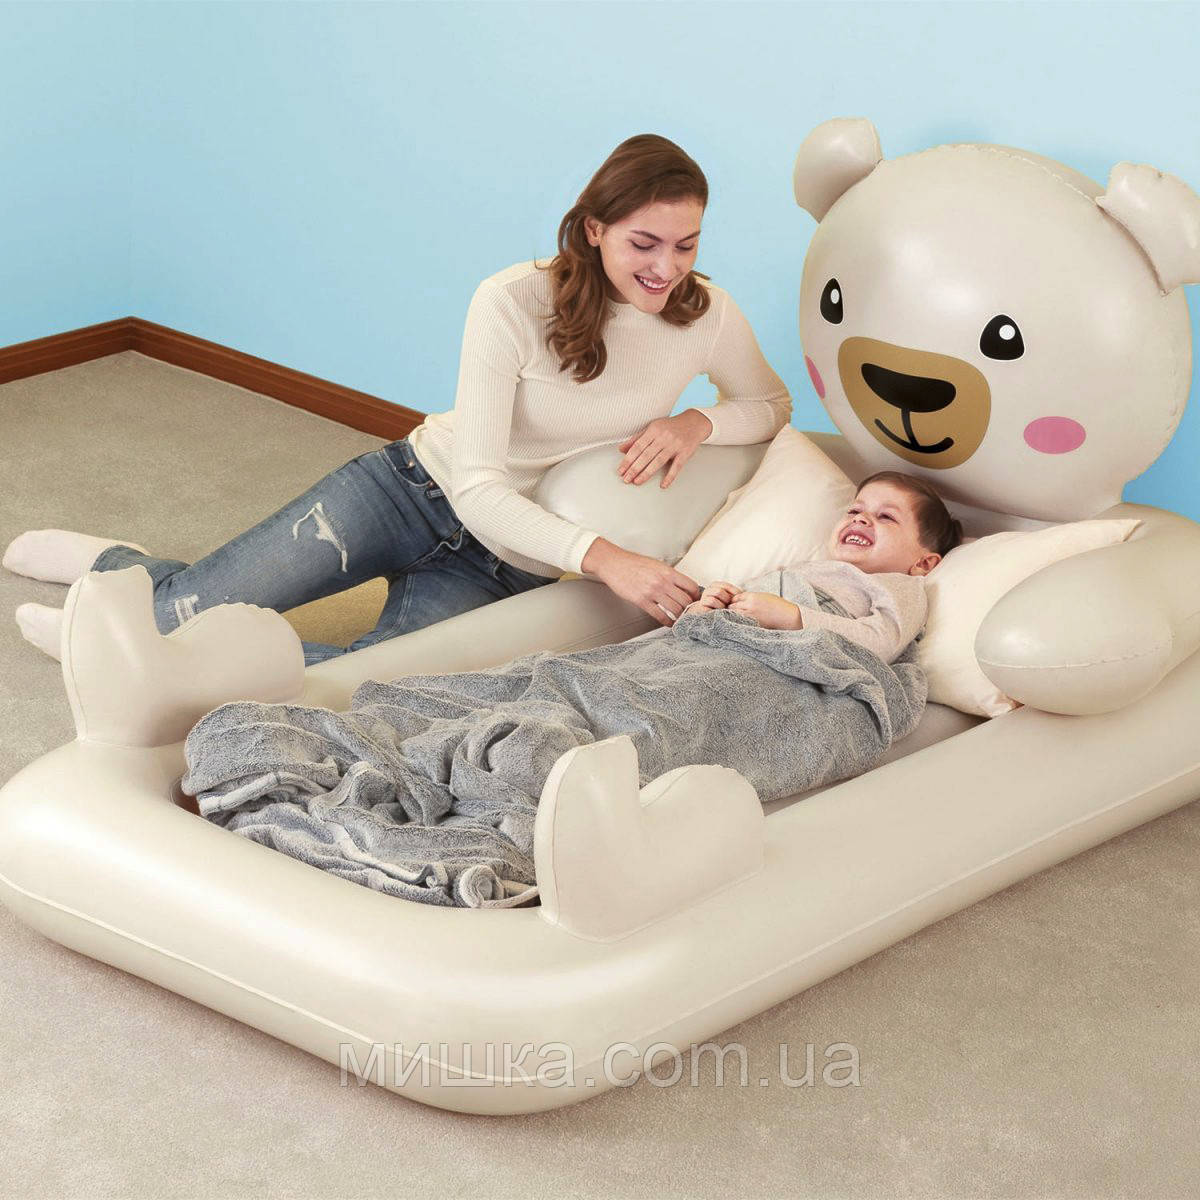 Дитяче односпальне надувне ліжко 188*109*89 см Bestway 67712 "Ведмедик Teddy"